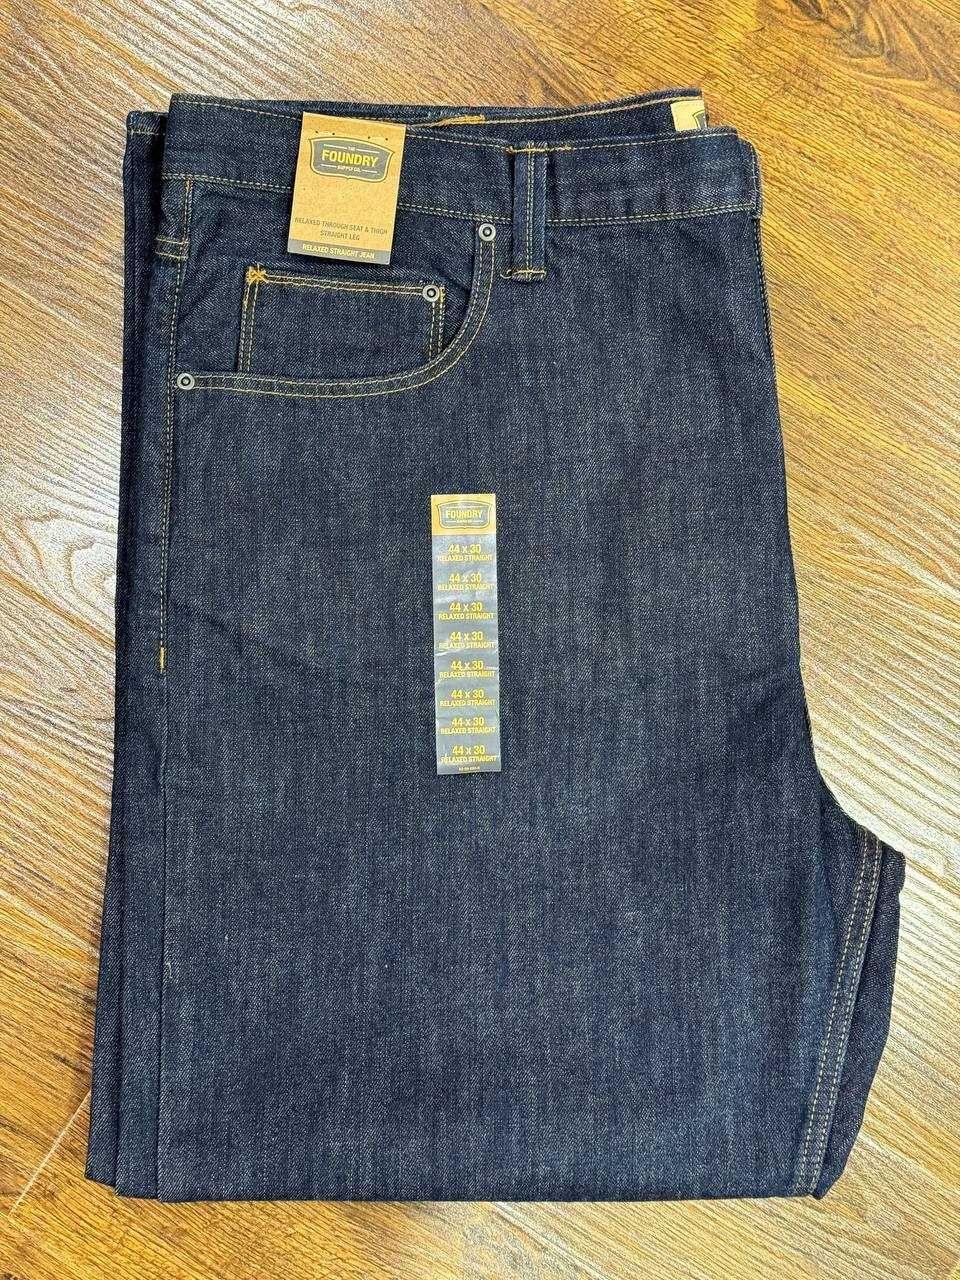 Новые Мужские джинсы из Америки FOUNDRY Relaxed Fit размер 44*30